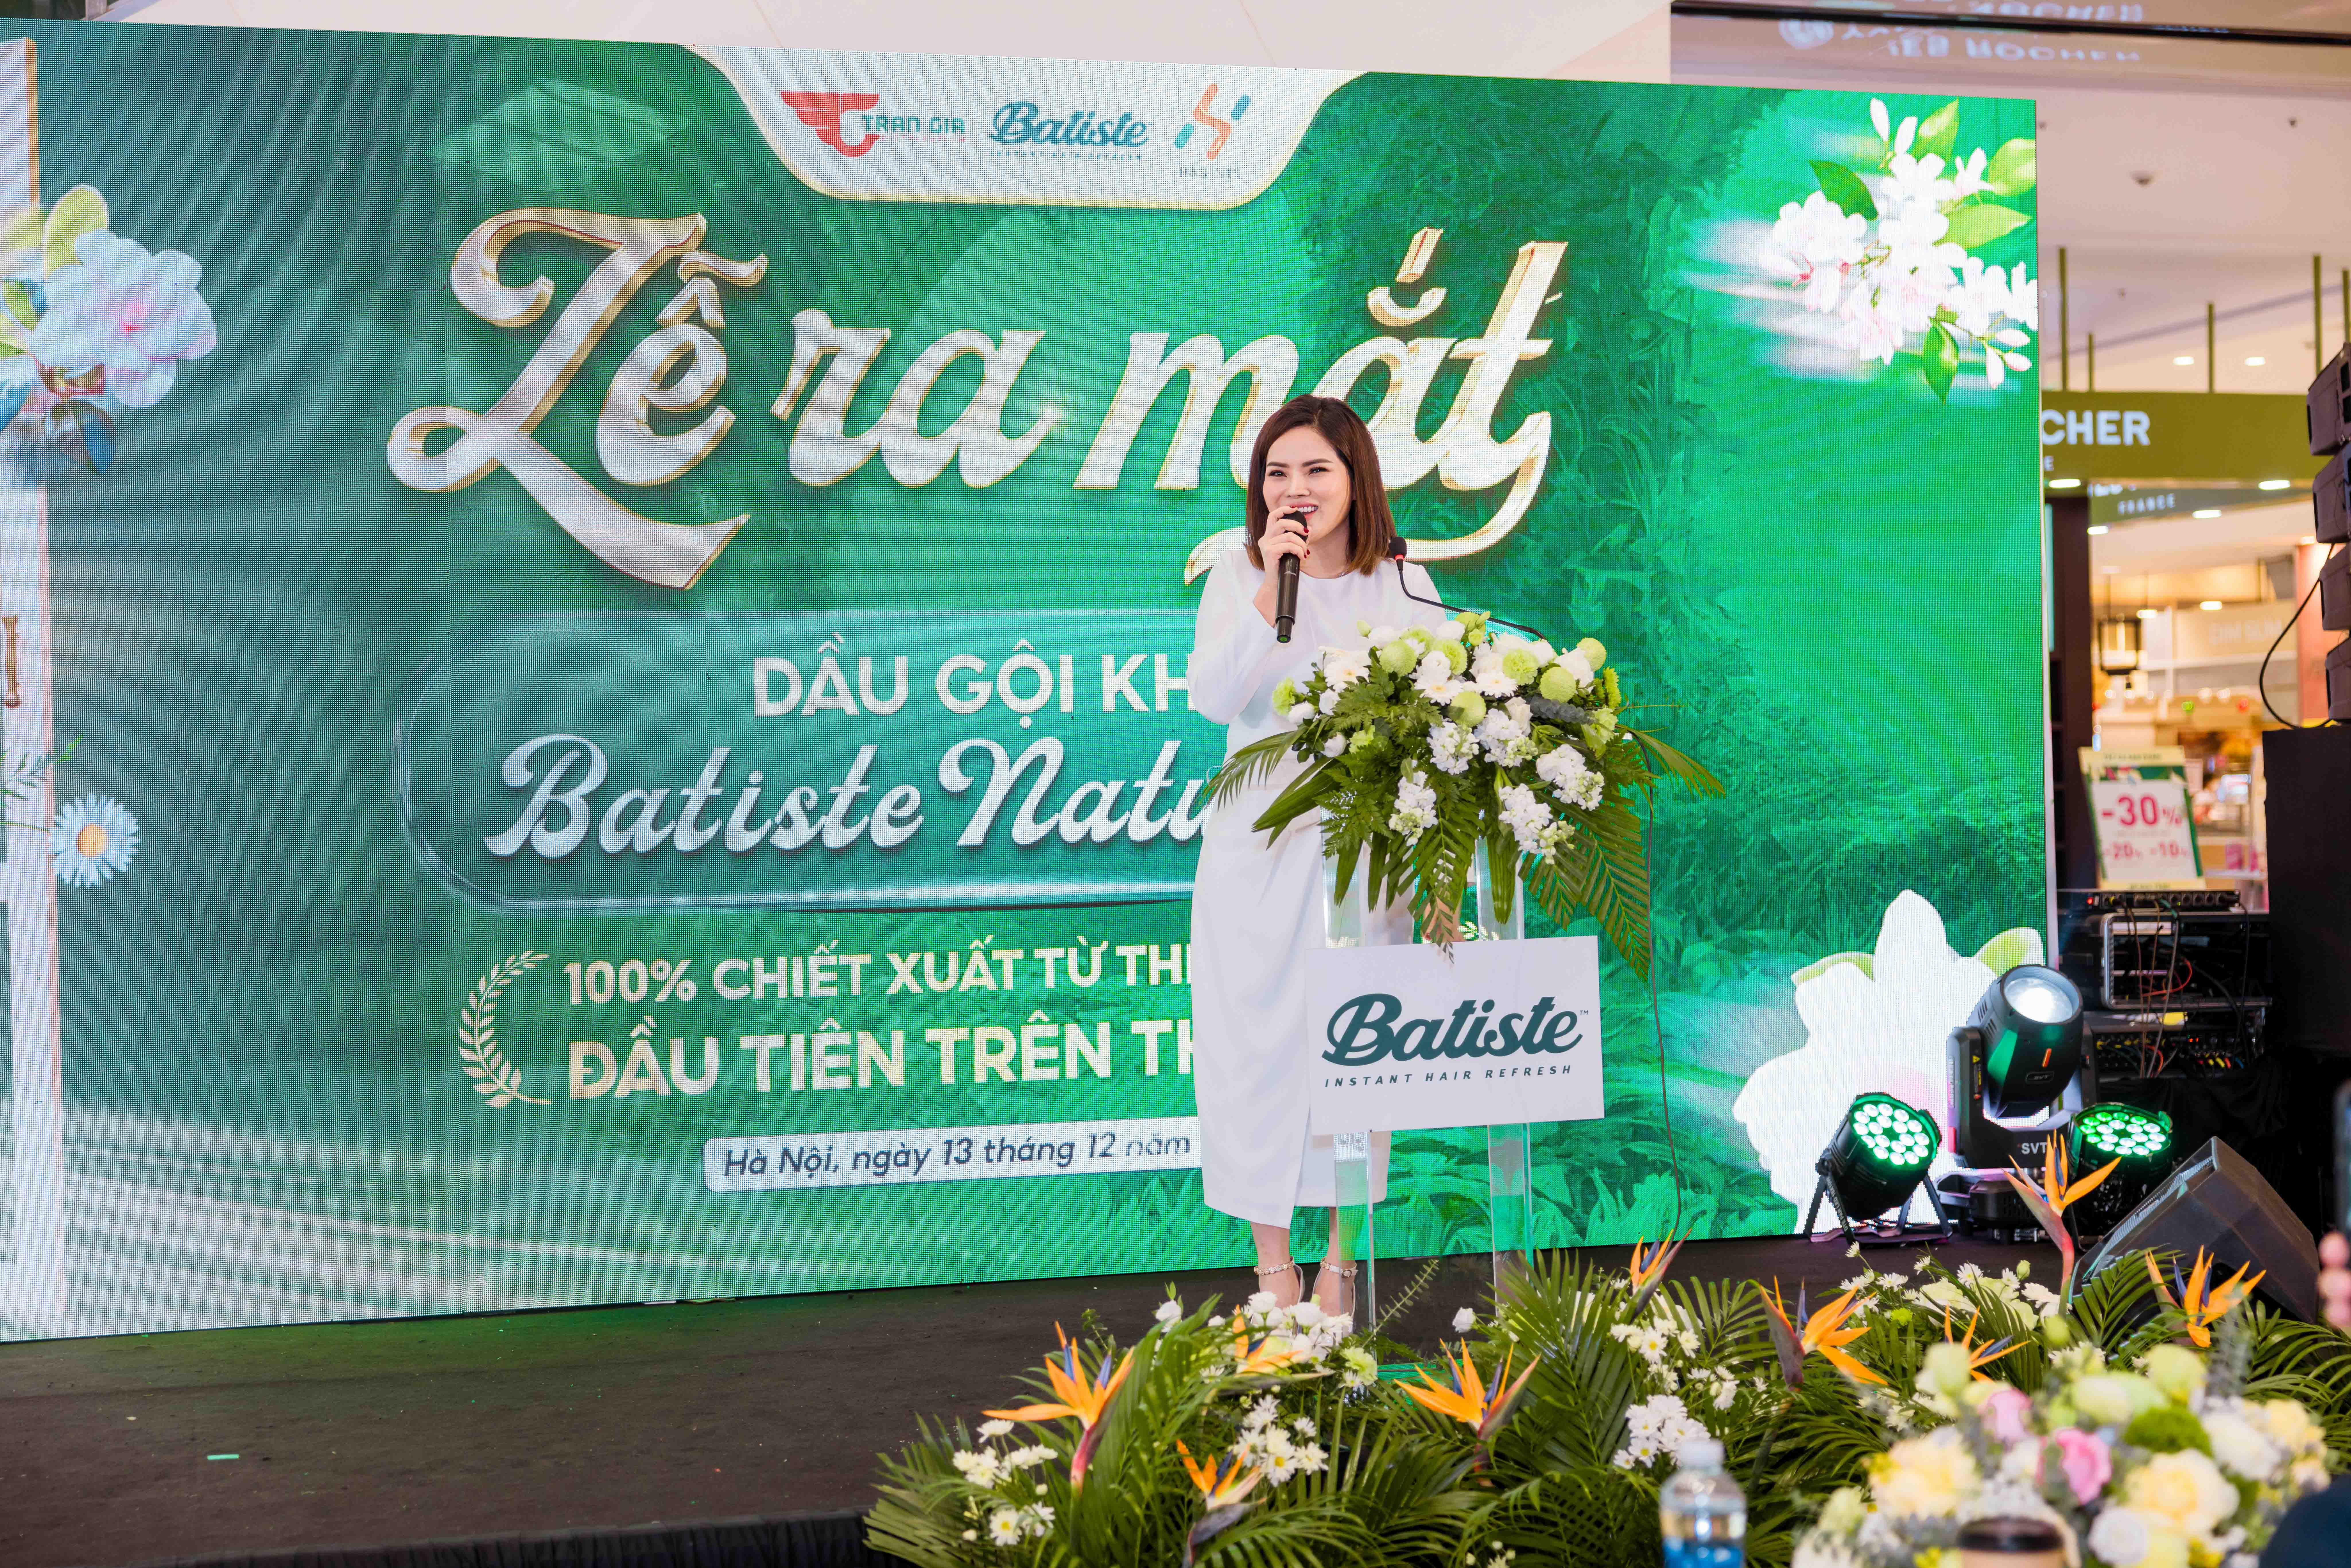 Bà Phạm Thị Khuyên - CEO Trần Gia Distribution phát biểu tại buổi lễ